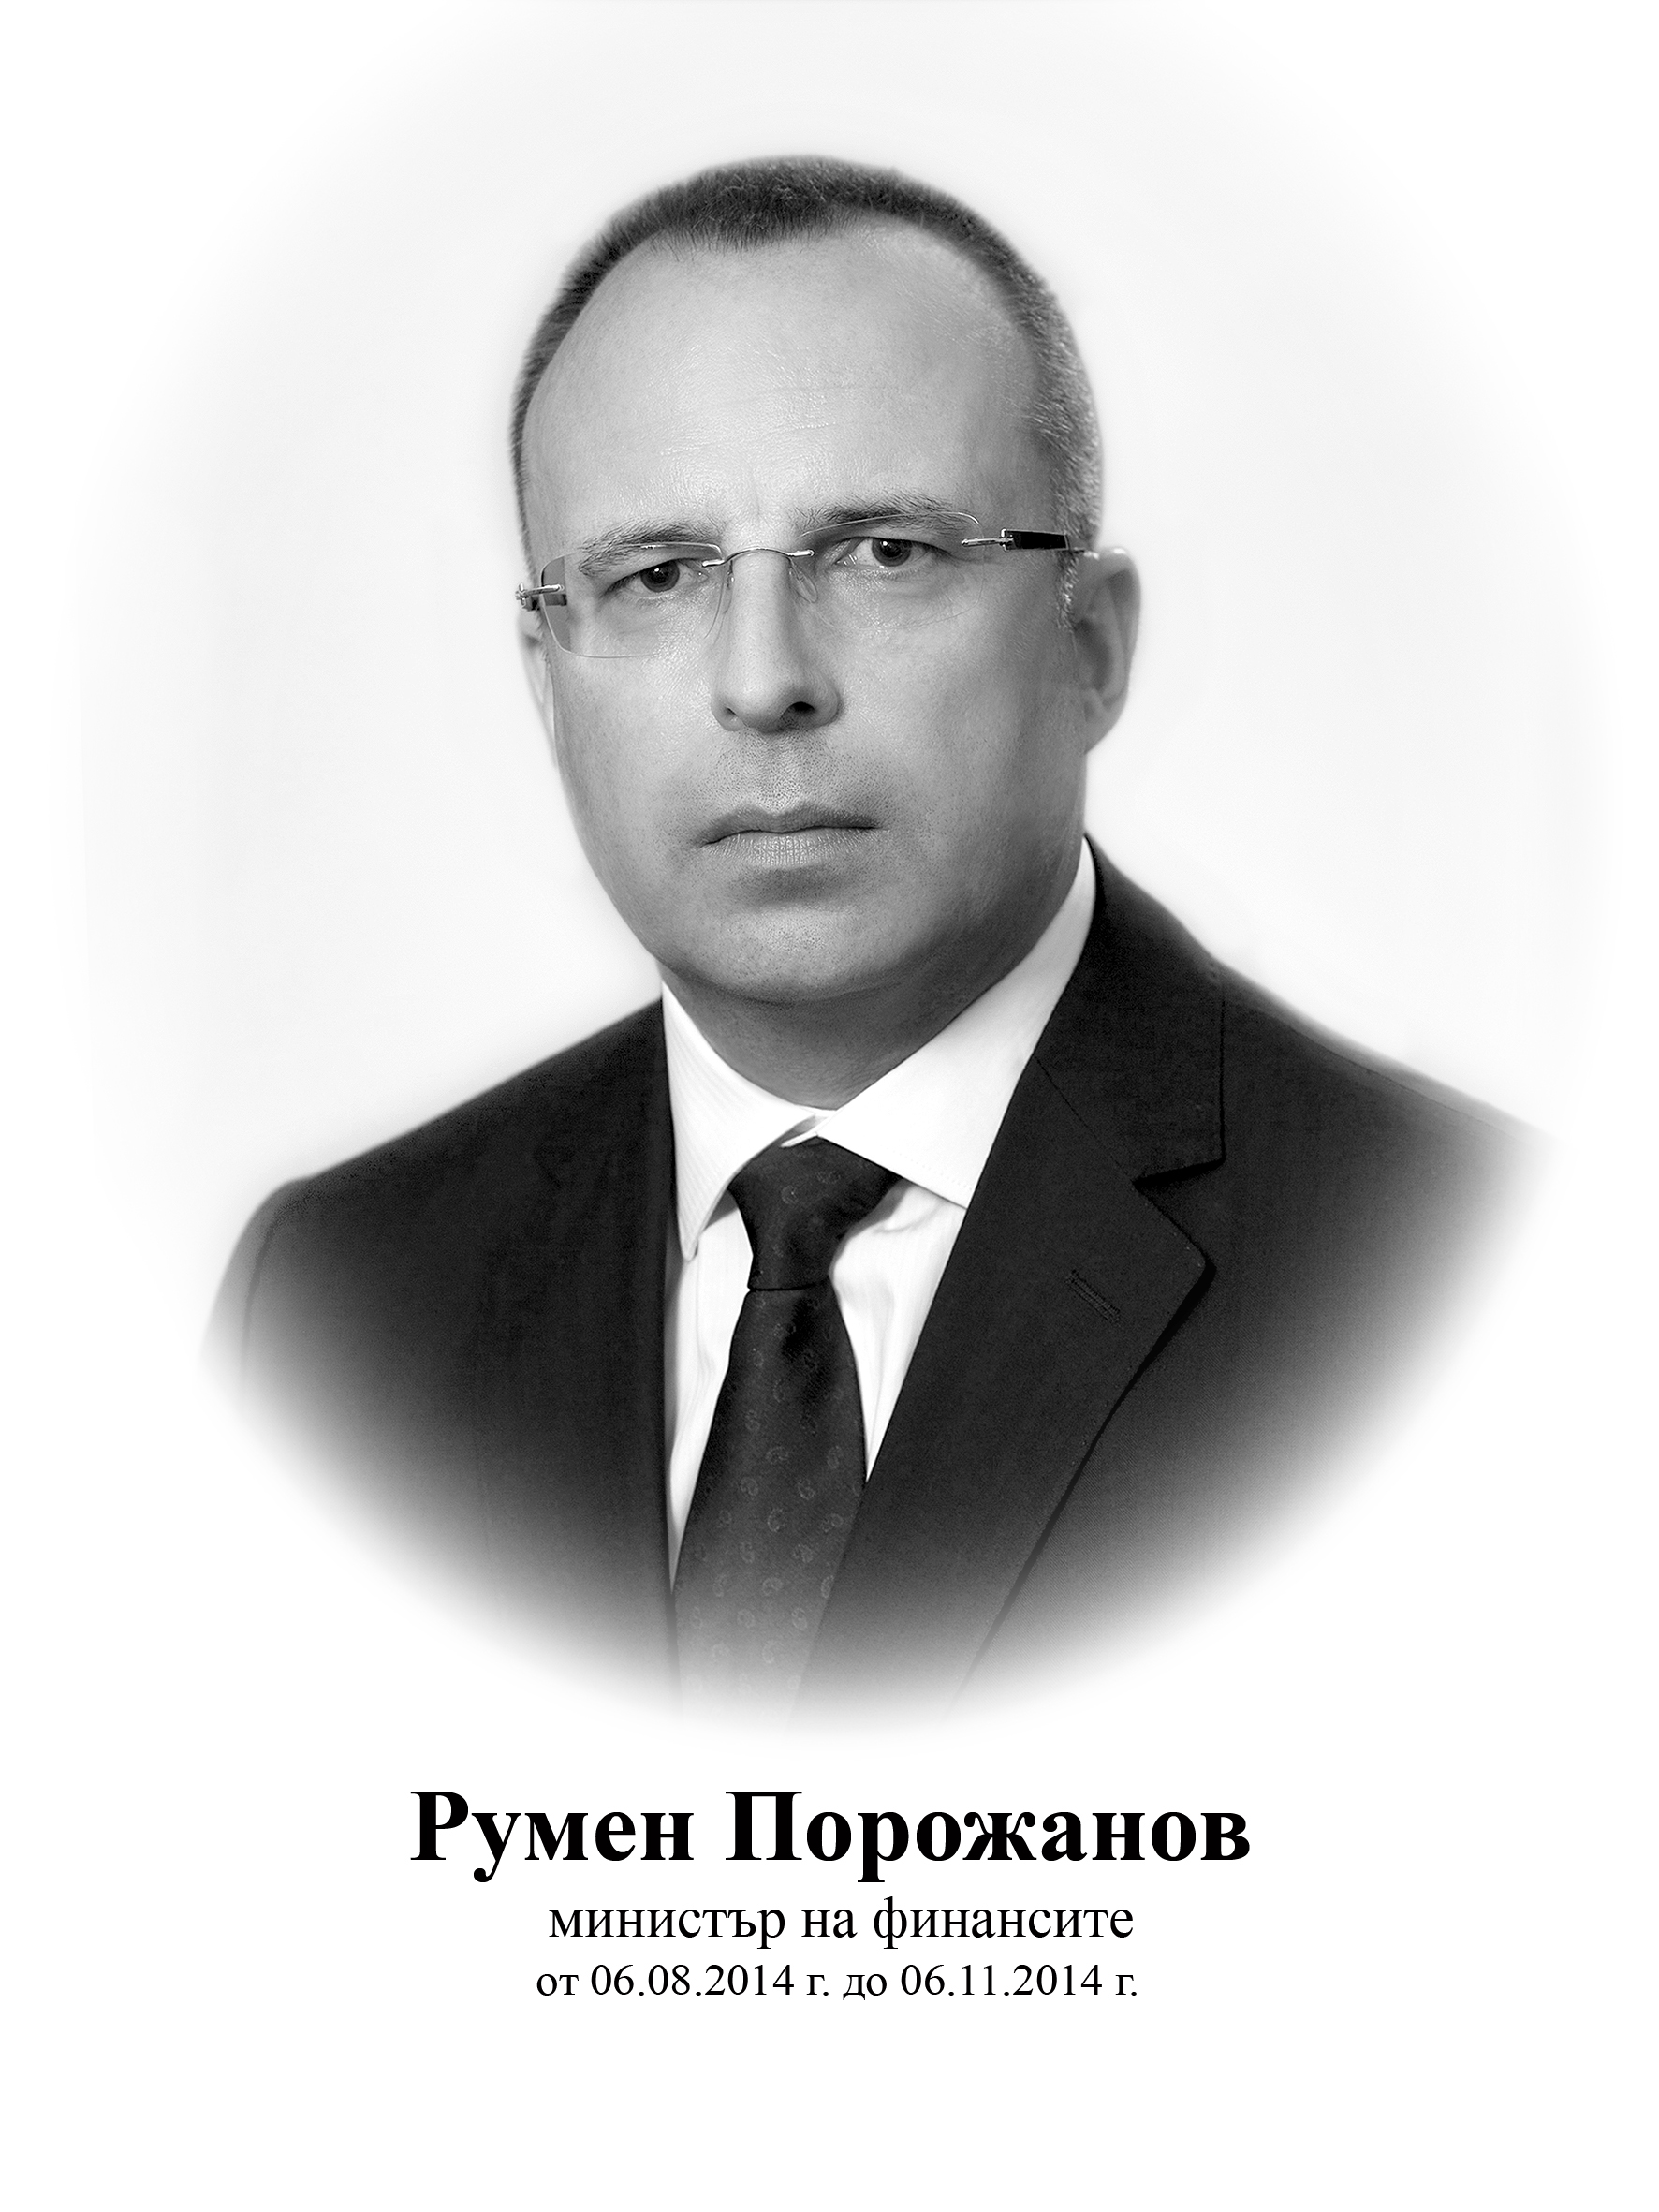 Roumen Porozhanov